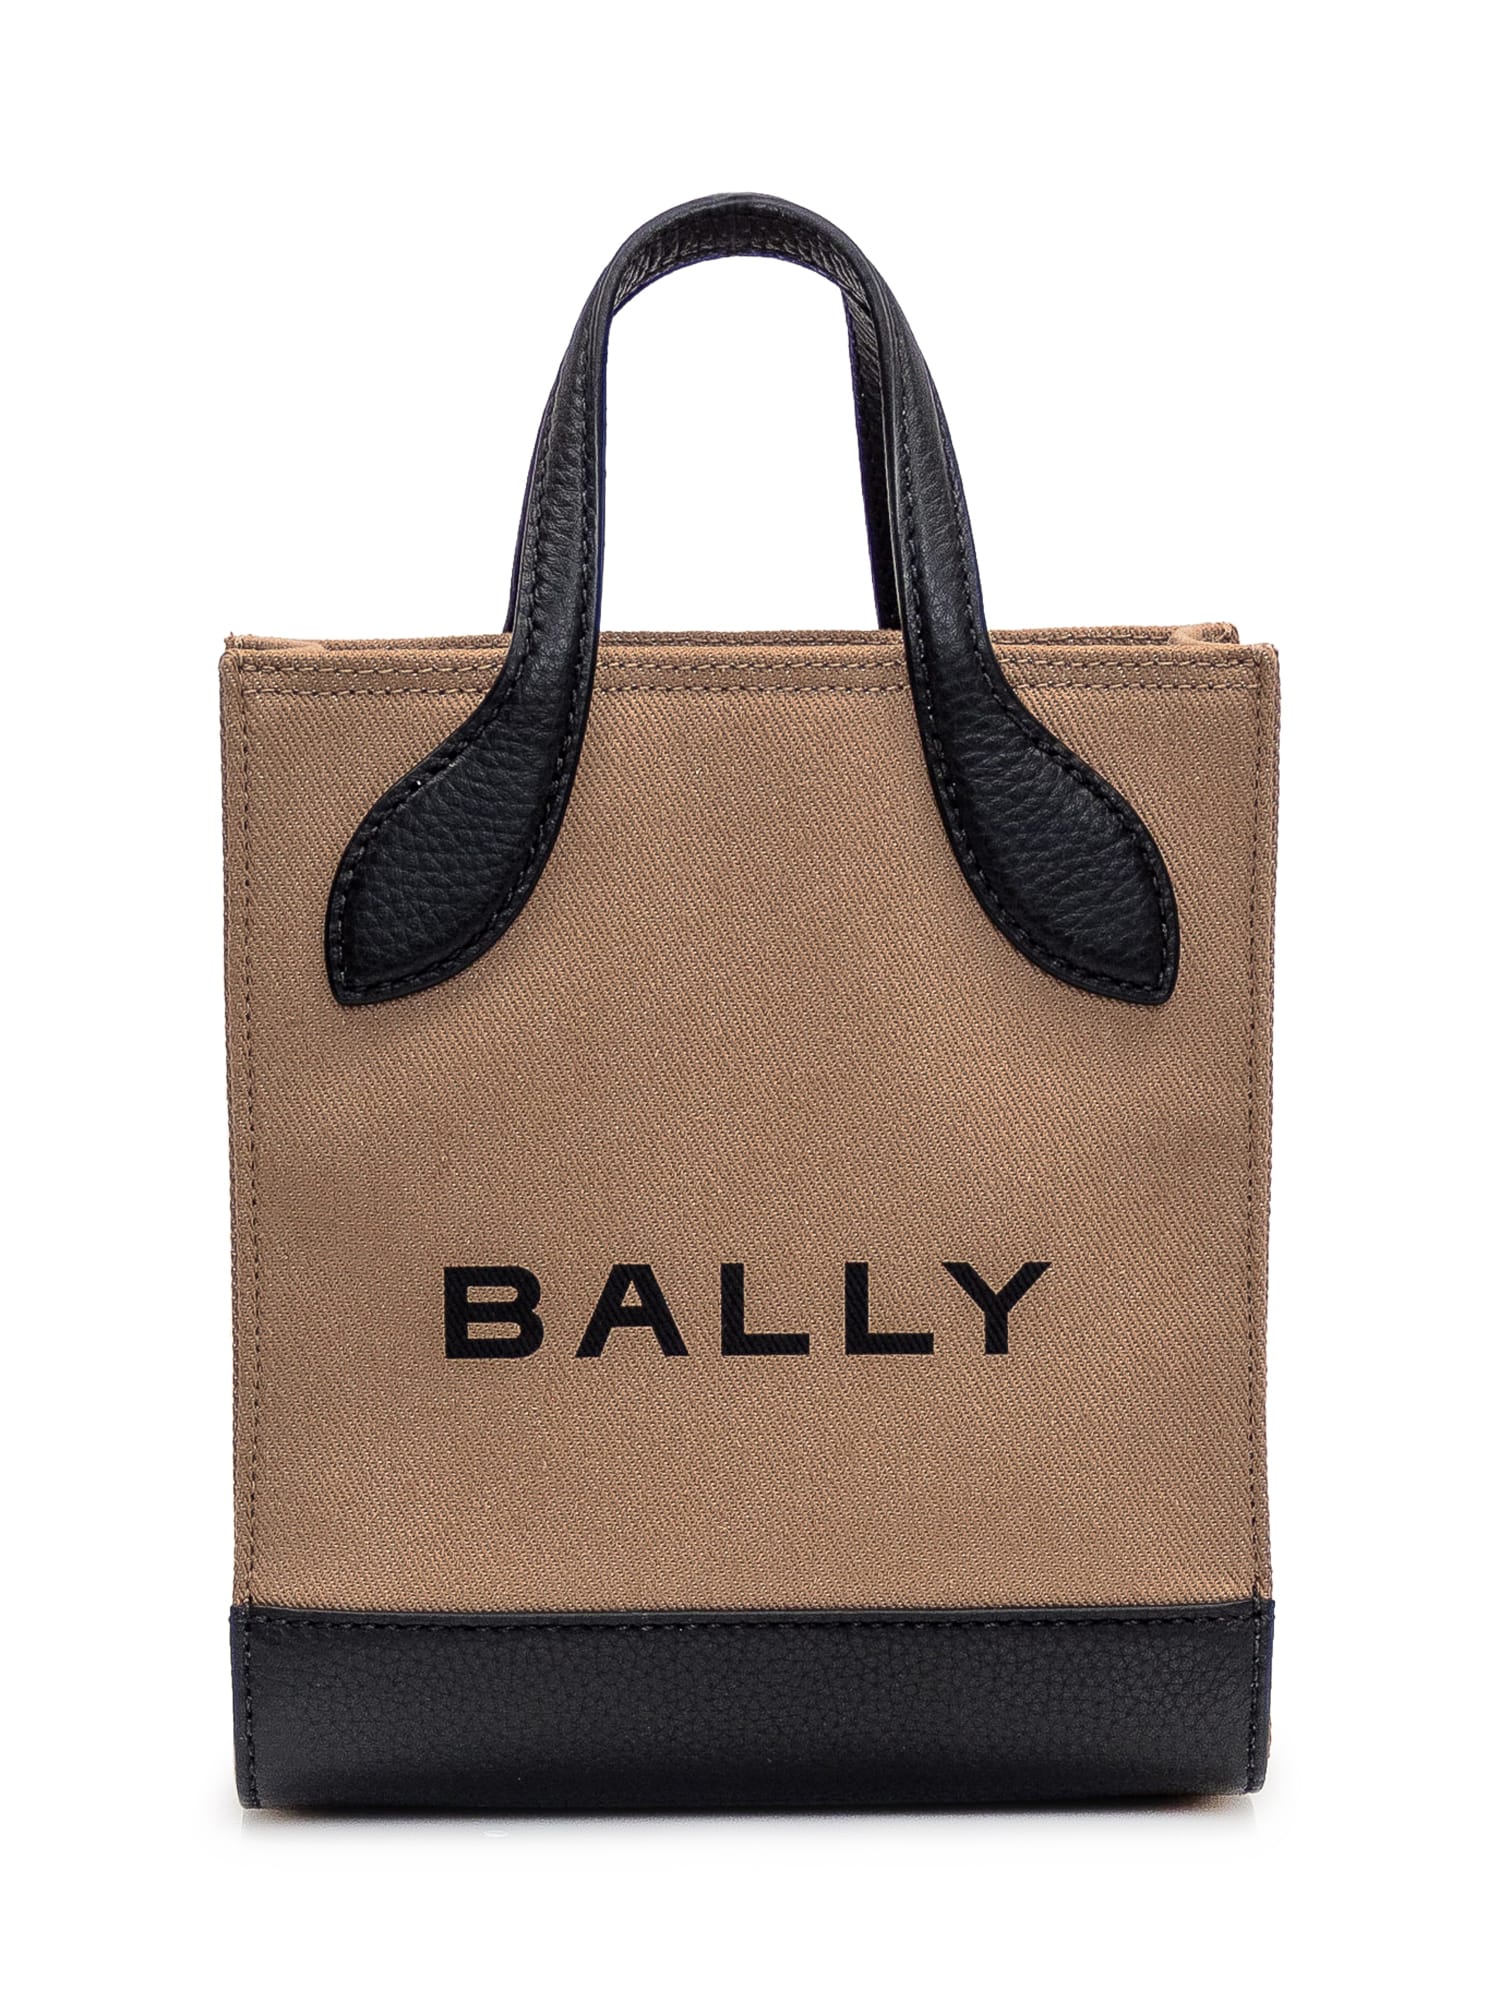 Bally Tote Mini Bag